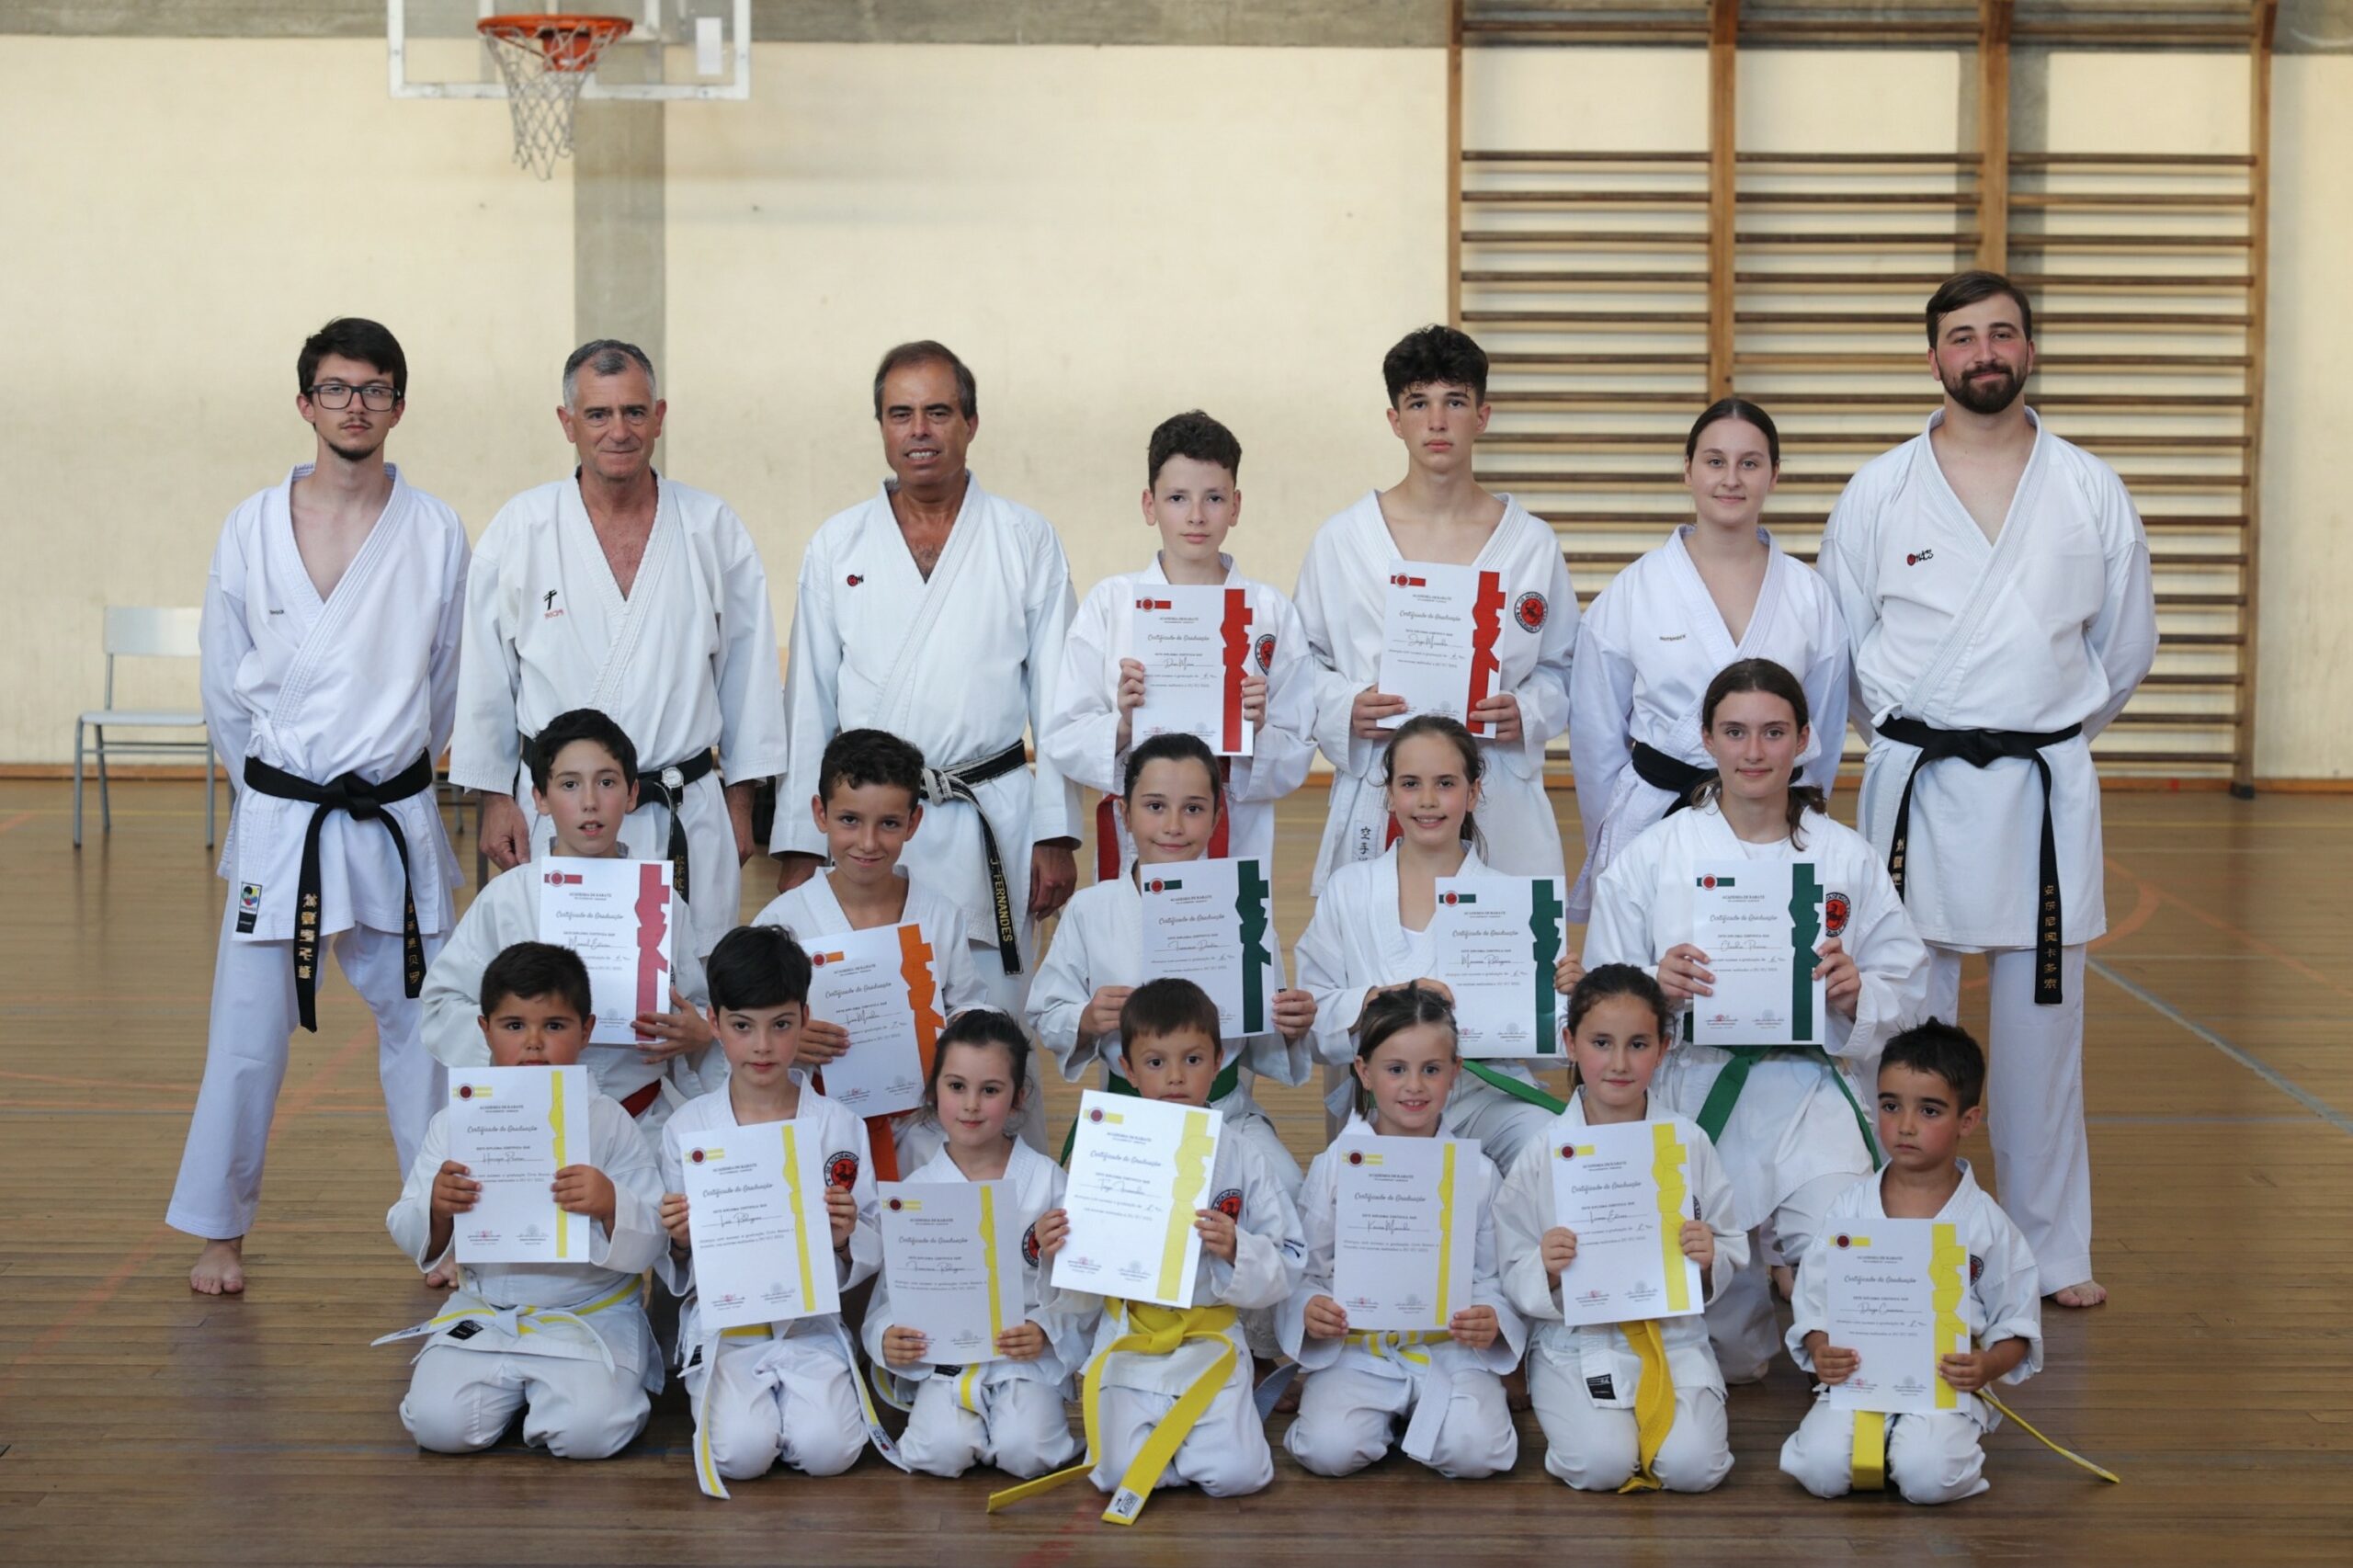 Academia De Karate “os Académicos” Realizou Exames De Graduação Rádio Cávado 